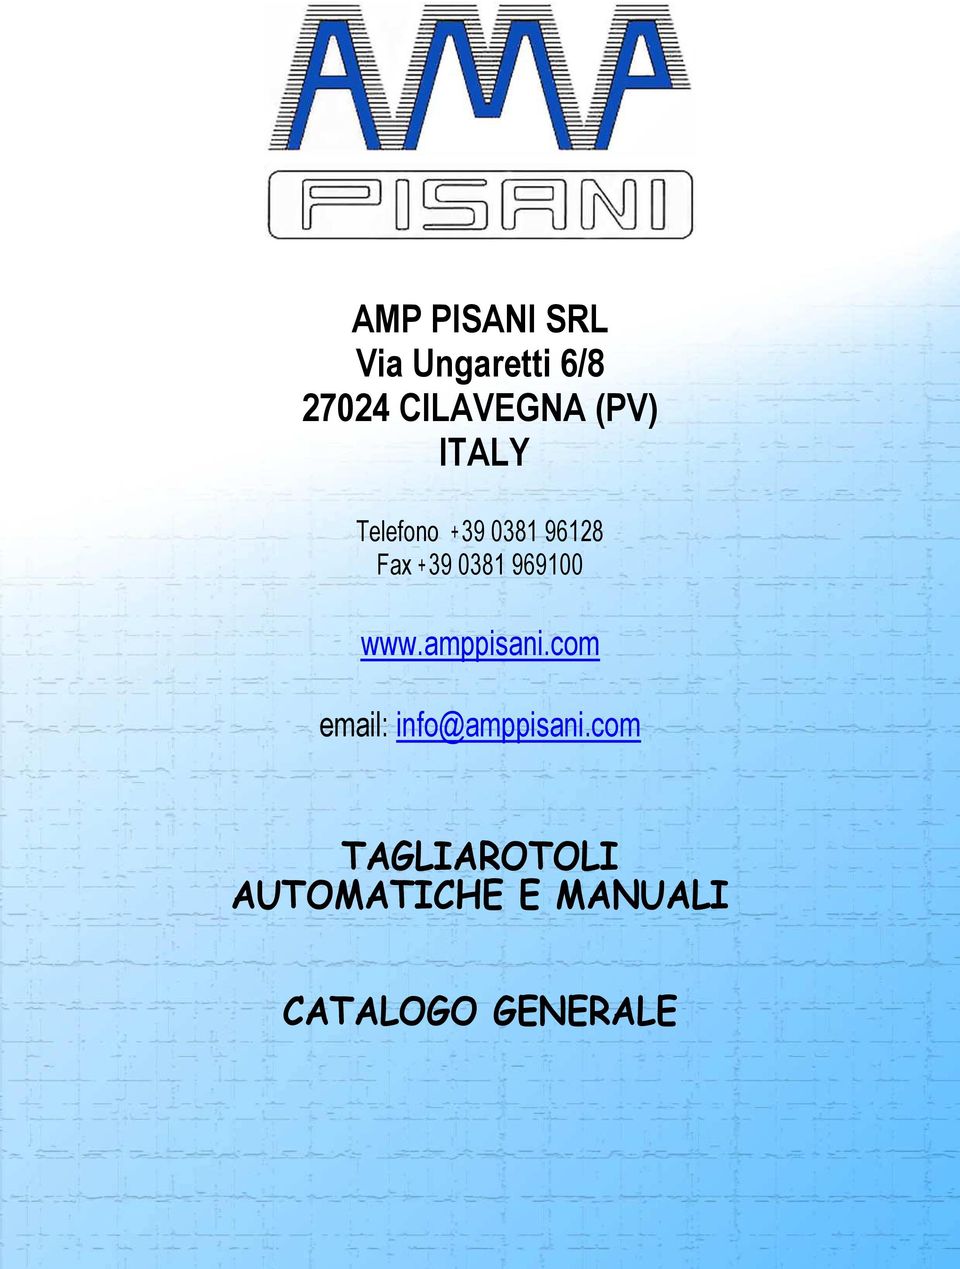 969100 www.amppisani.com email: info@amppisani.